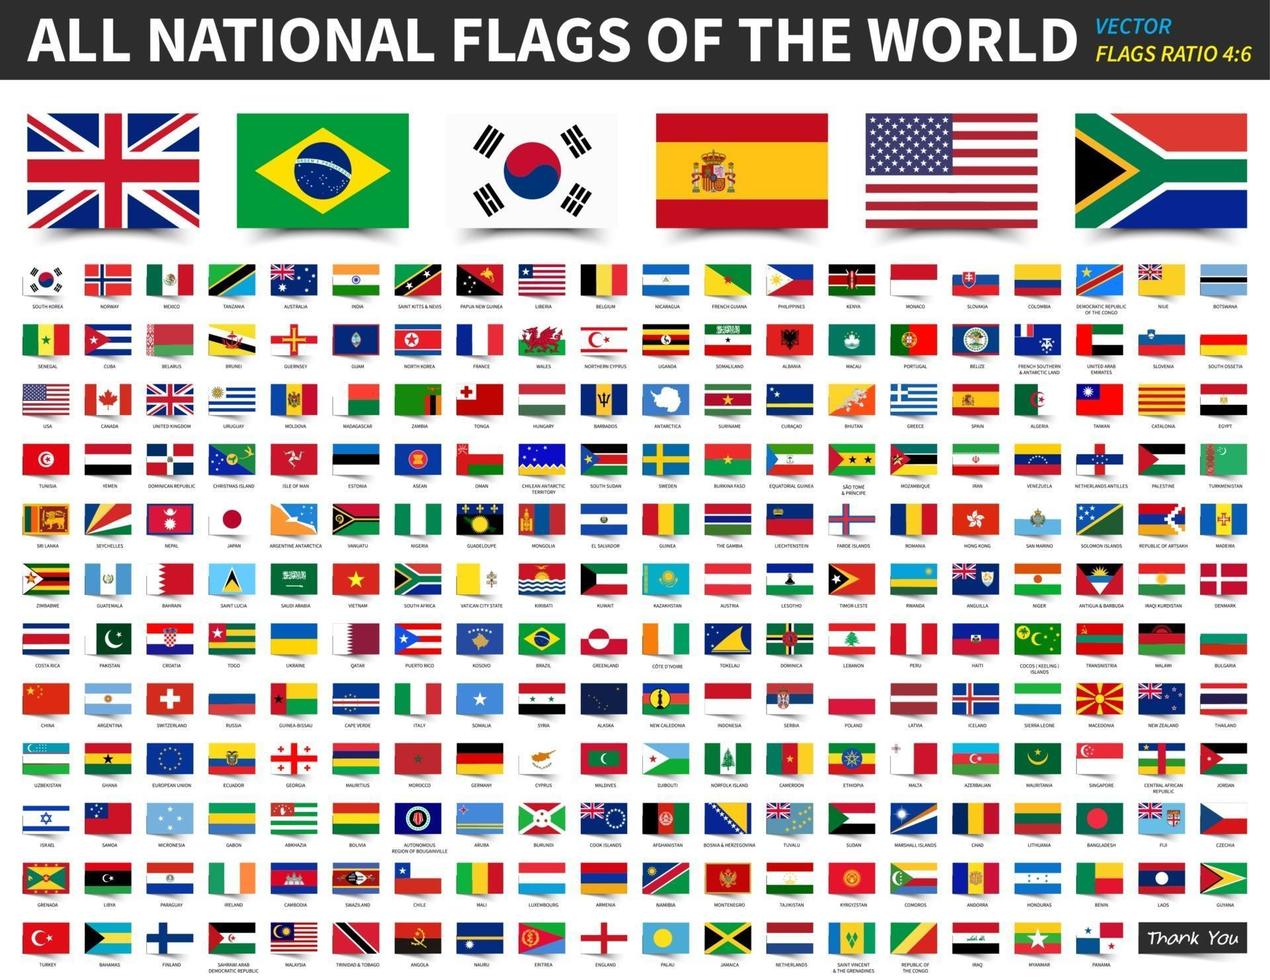 todas as bandeiras nacionais do mundo. design de proporção 4 - 6 com estilo de papel adesivo flutuante. vetor de elementos.